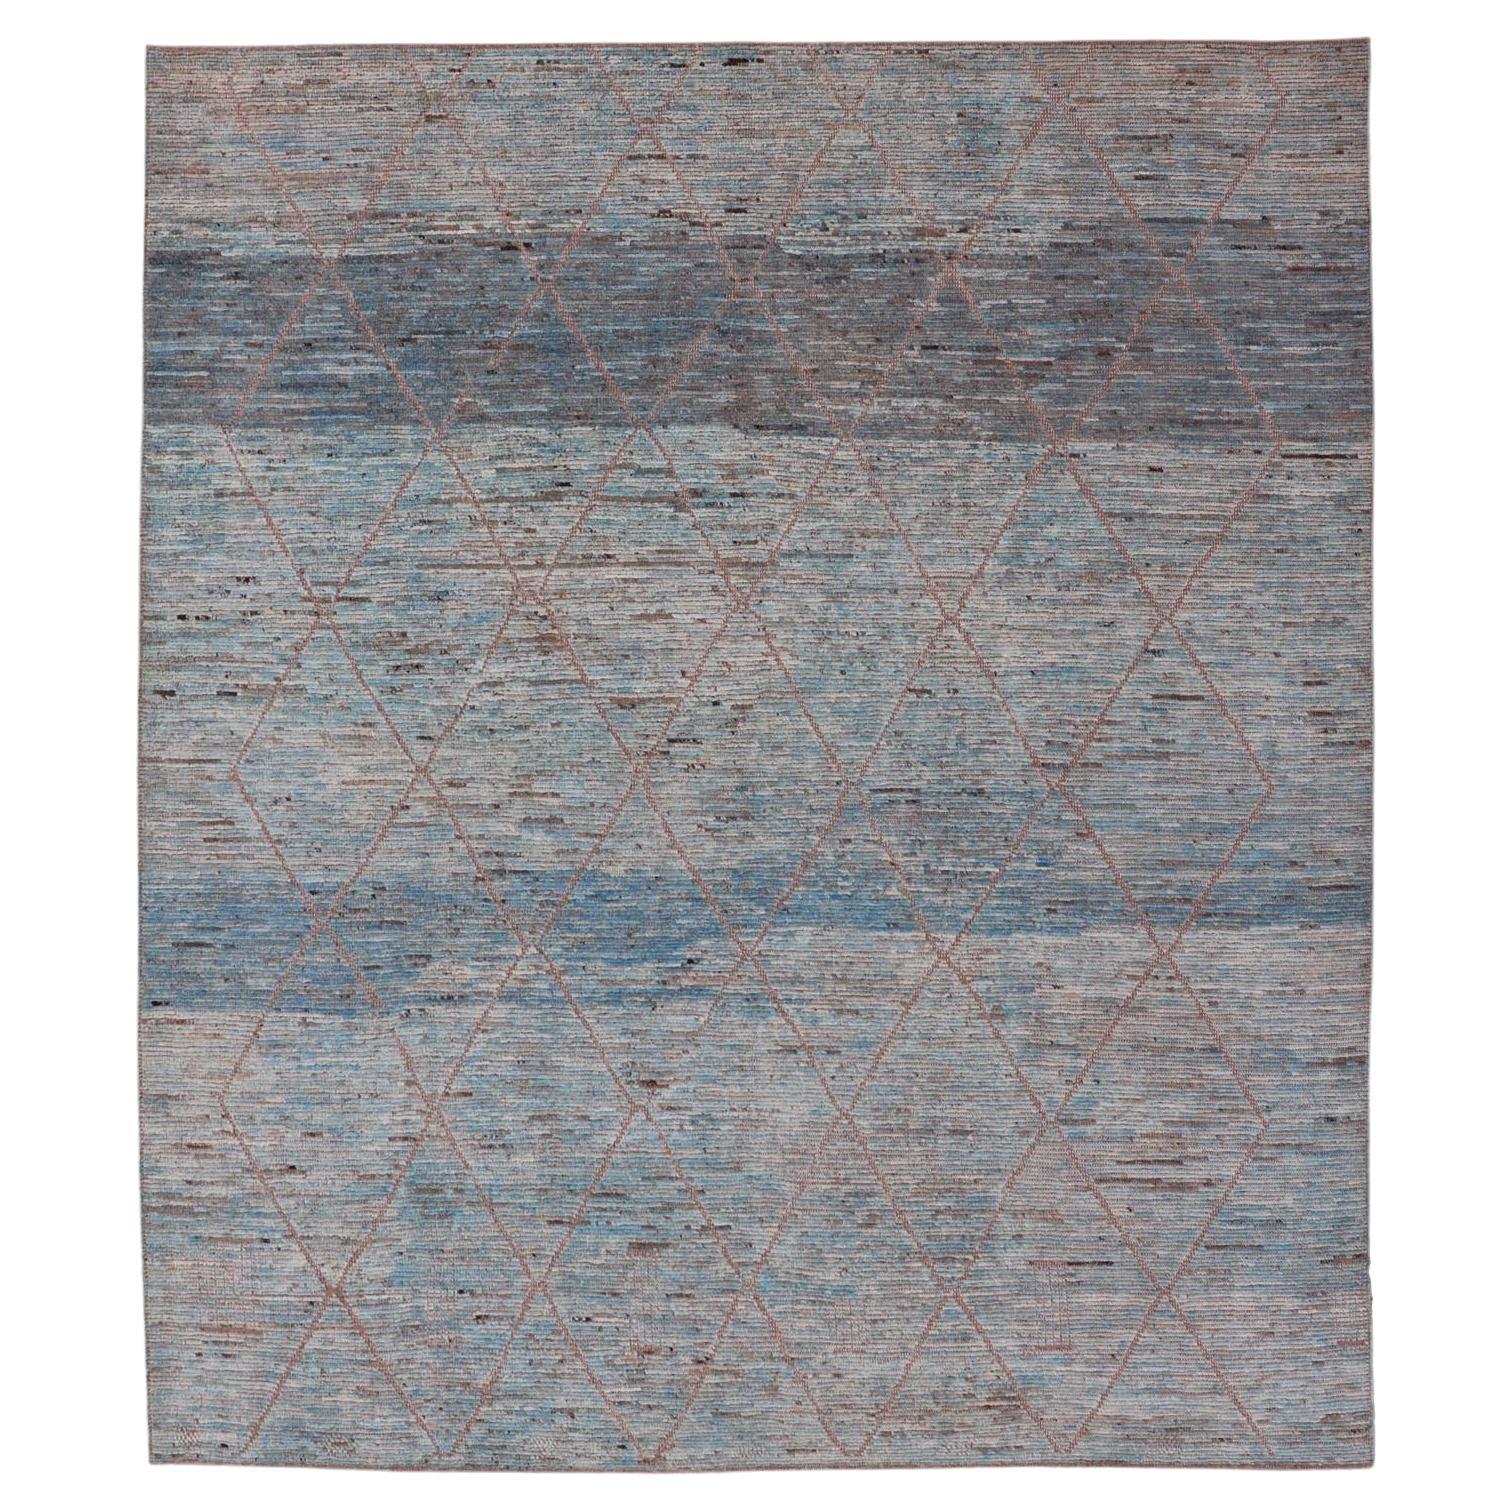 Moderner Stammesteppich aus Wolle mit subgeometrischem Design in Blau, Tan und Elfenbein